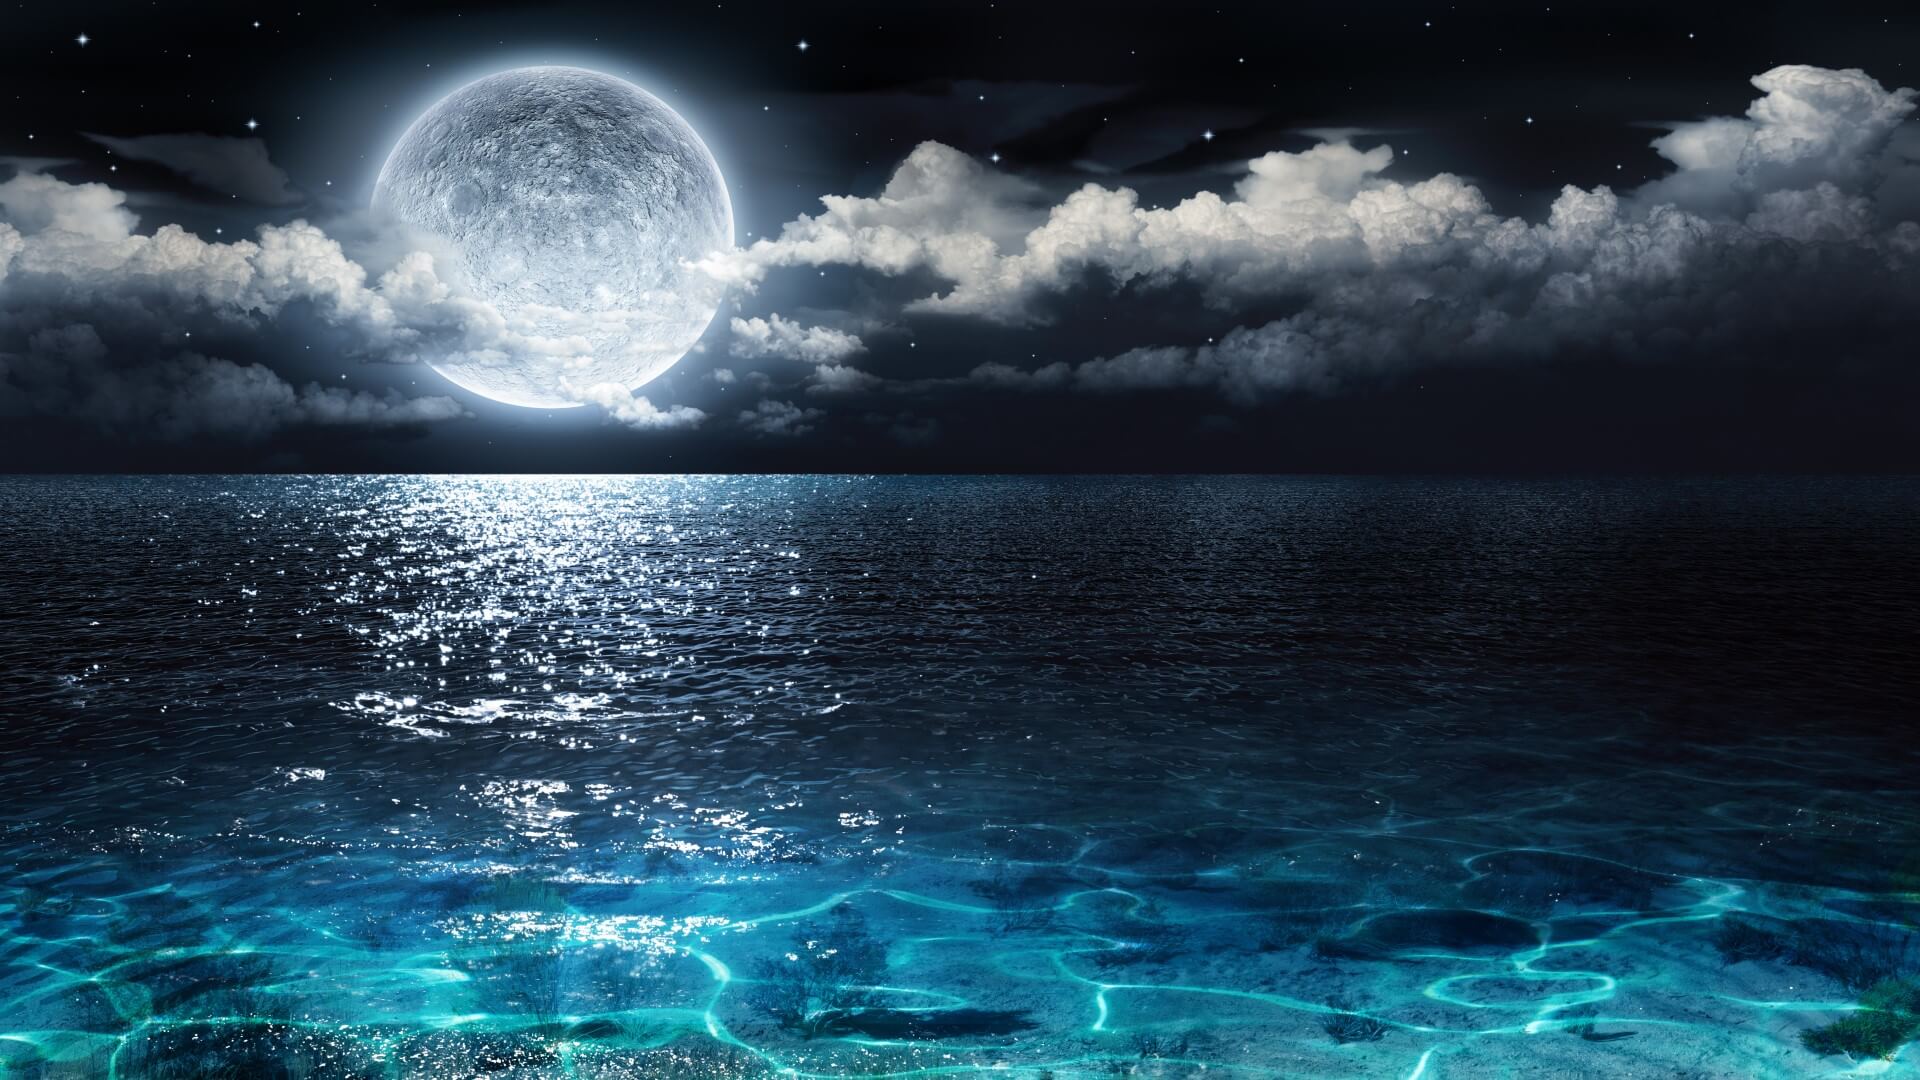 Hình ảnh mặt trăng đẹp lung linh huyền ảo của bầu trời đêm